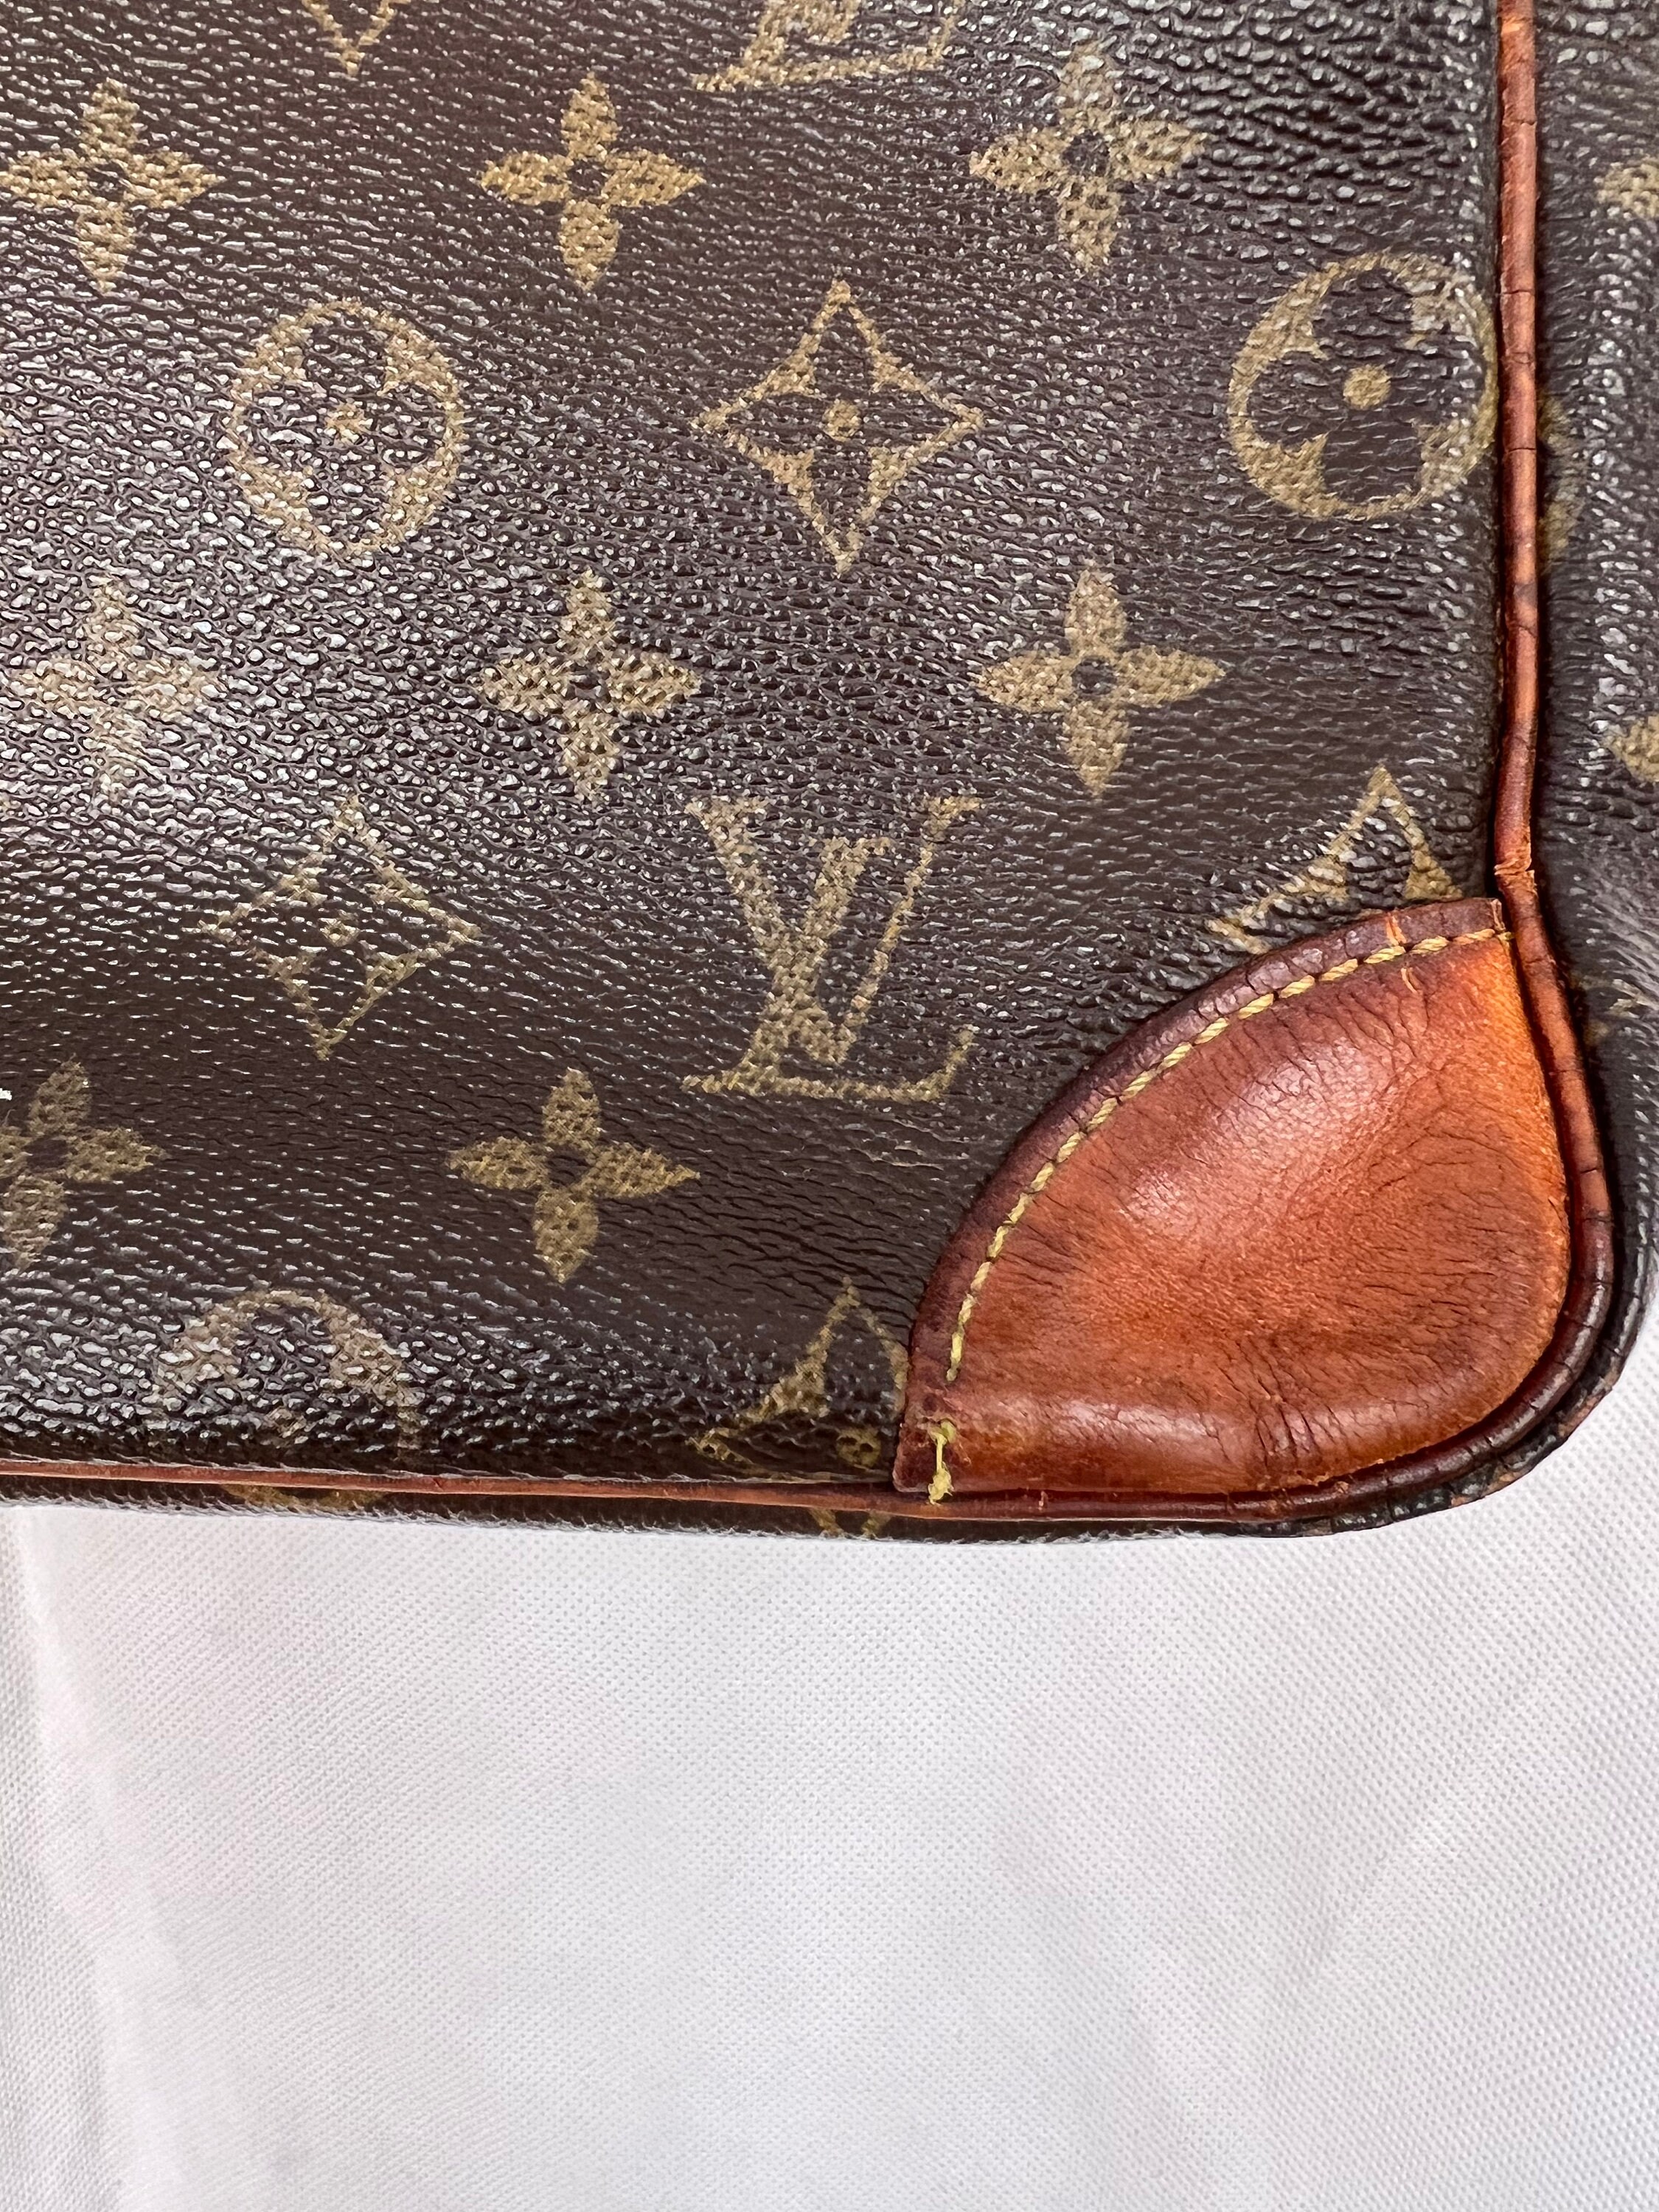 Pre Loved Louis Vuitton Monogram Empreinte Trocadero – Bluefly